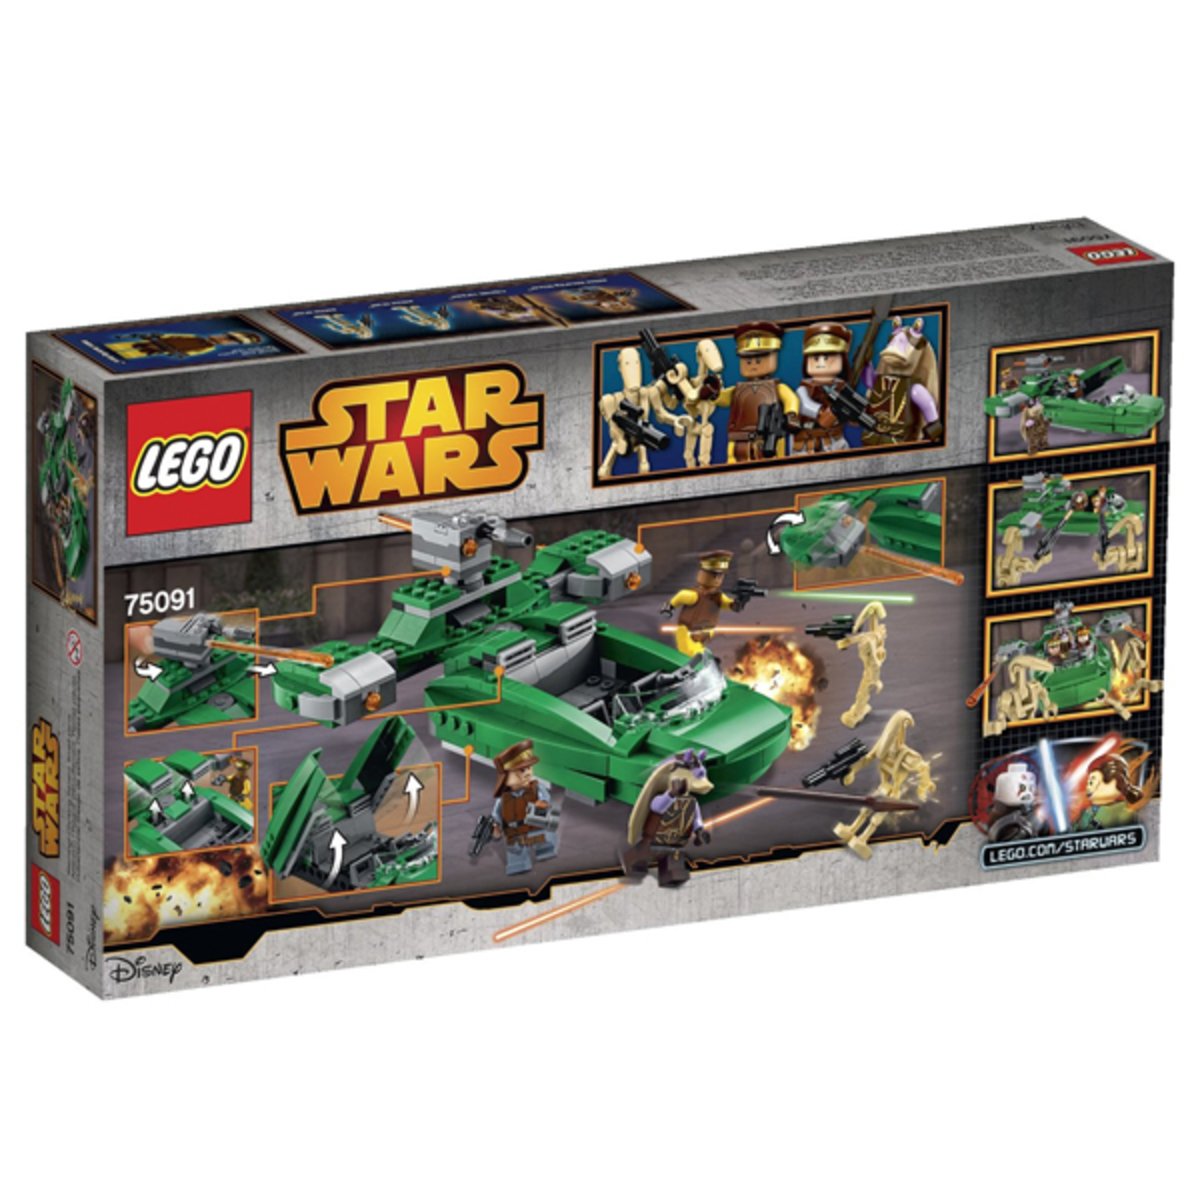 Lego Star Wars Flash Speeder Building Kit 75091